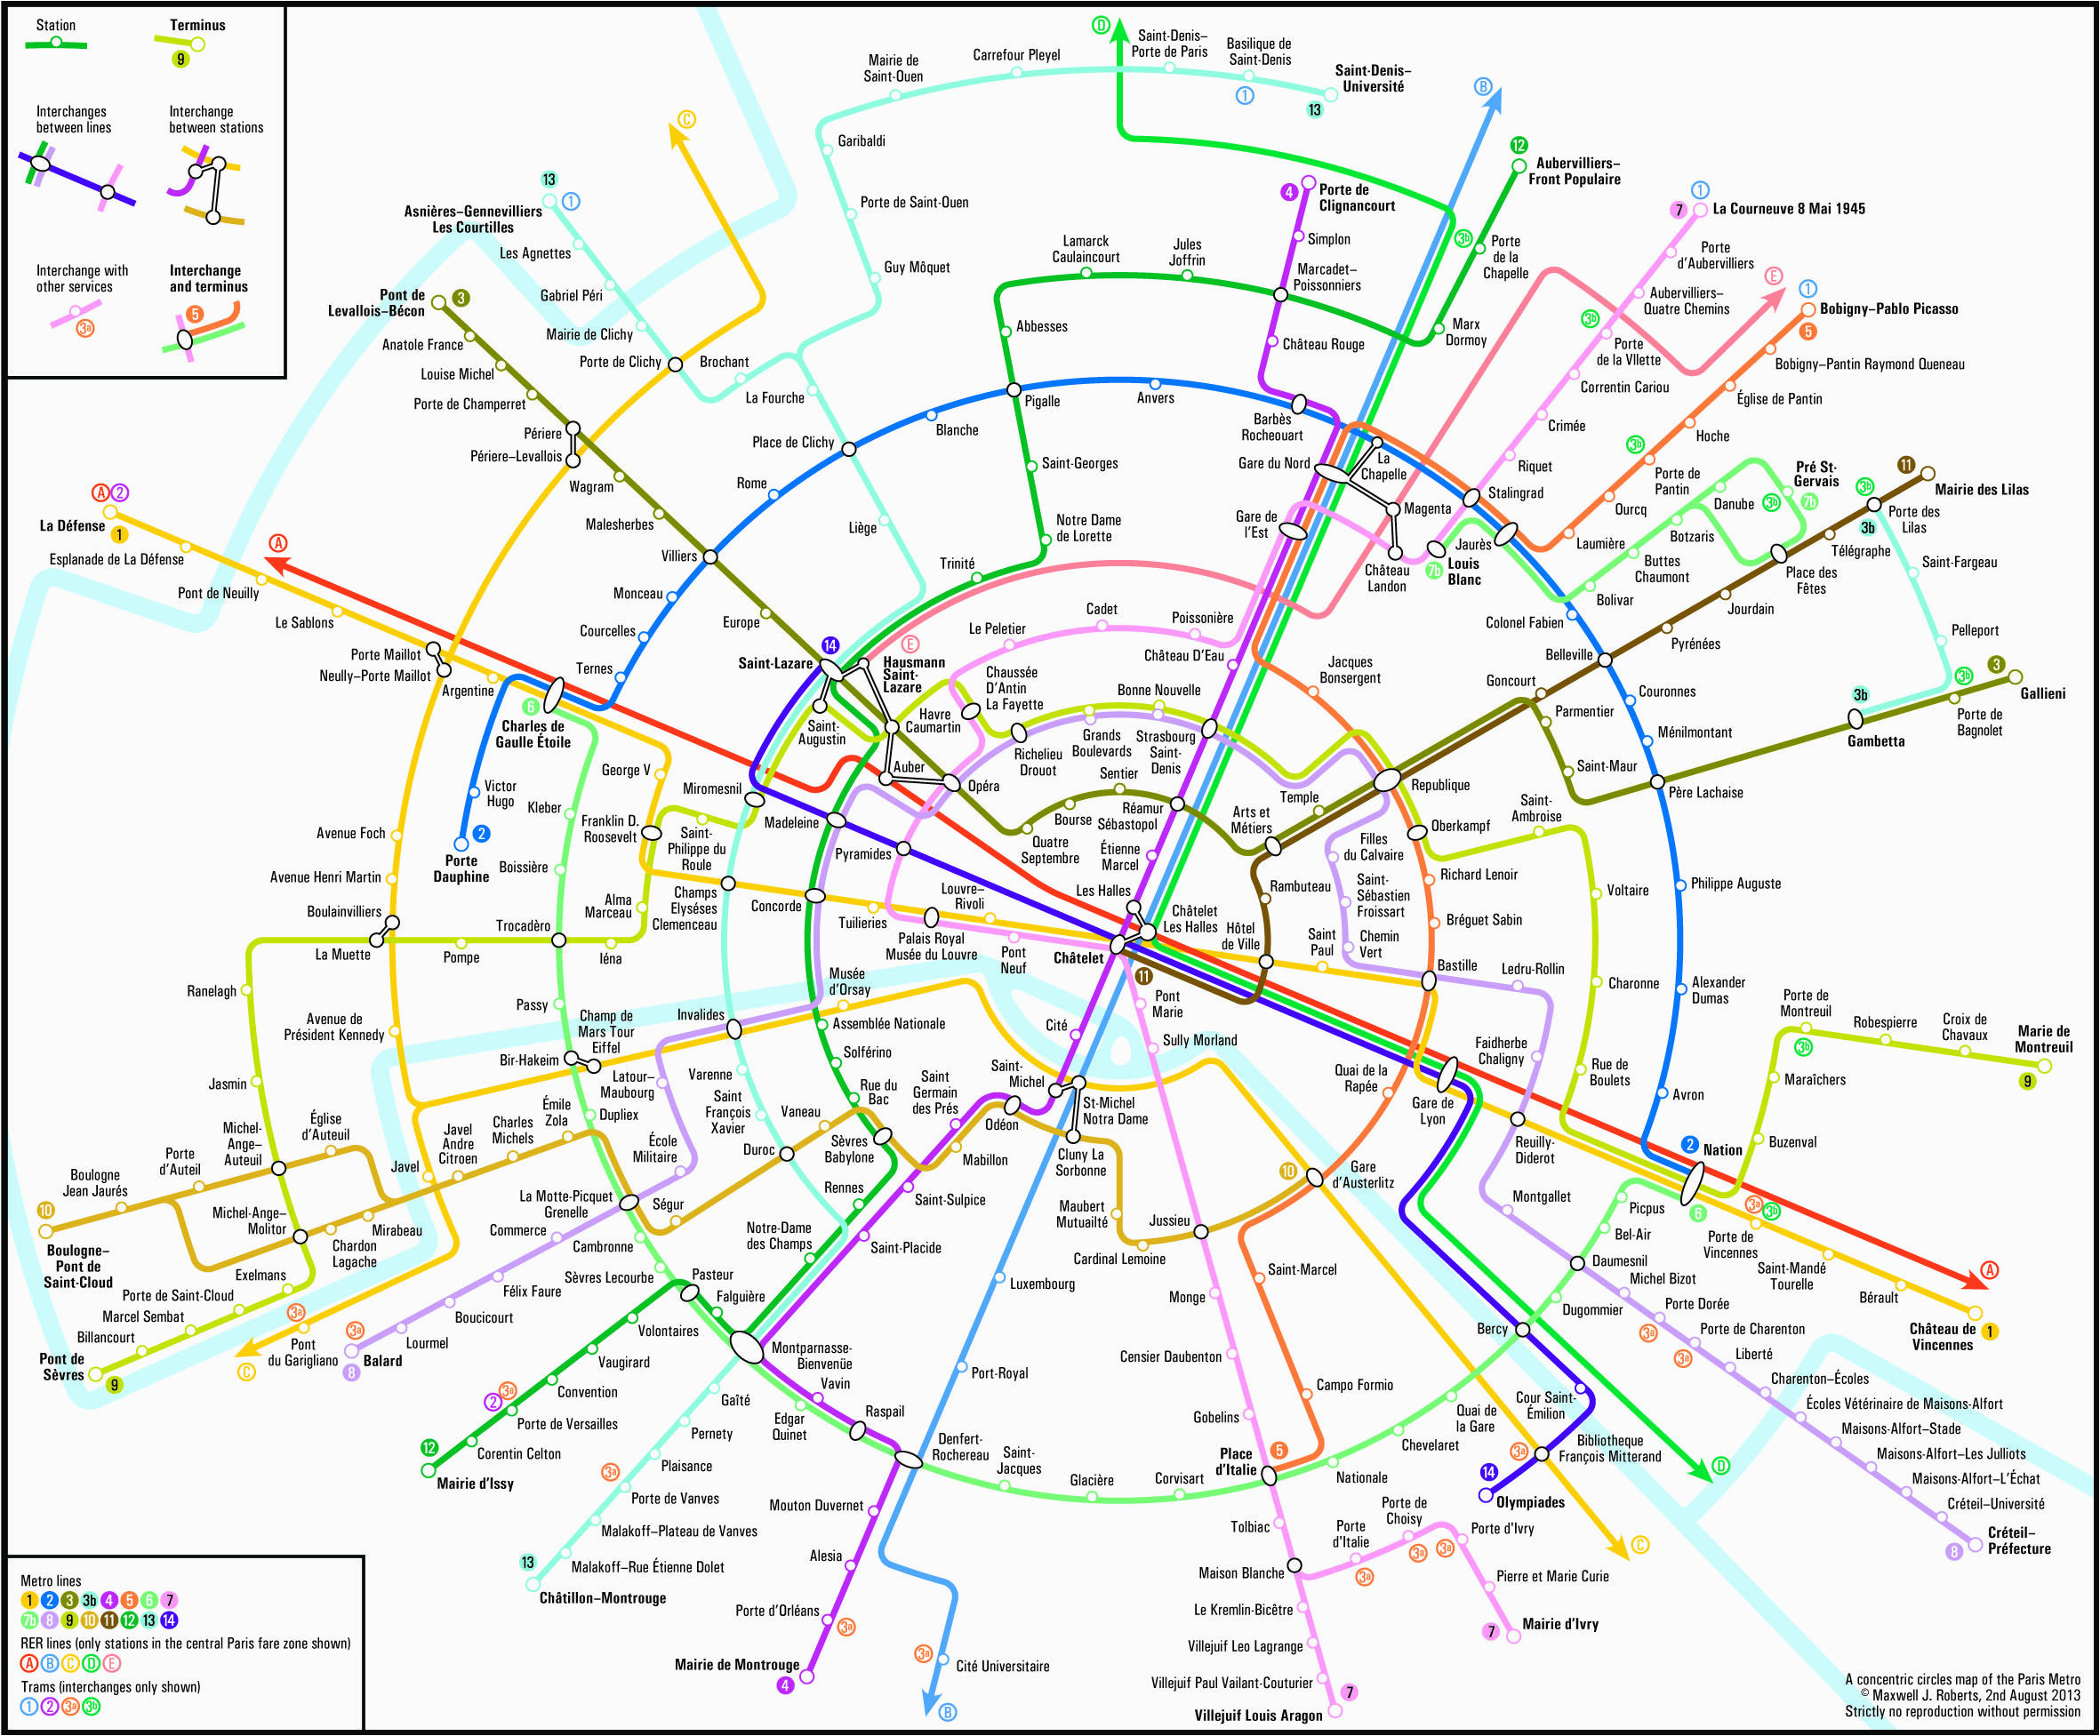 Map Of Paris France Metro Paris Metro Map Subway System Maps In 2019 Paris Metro Paris